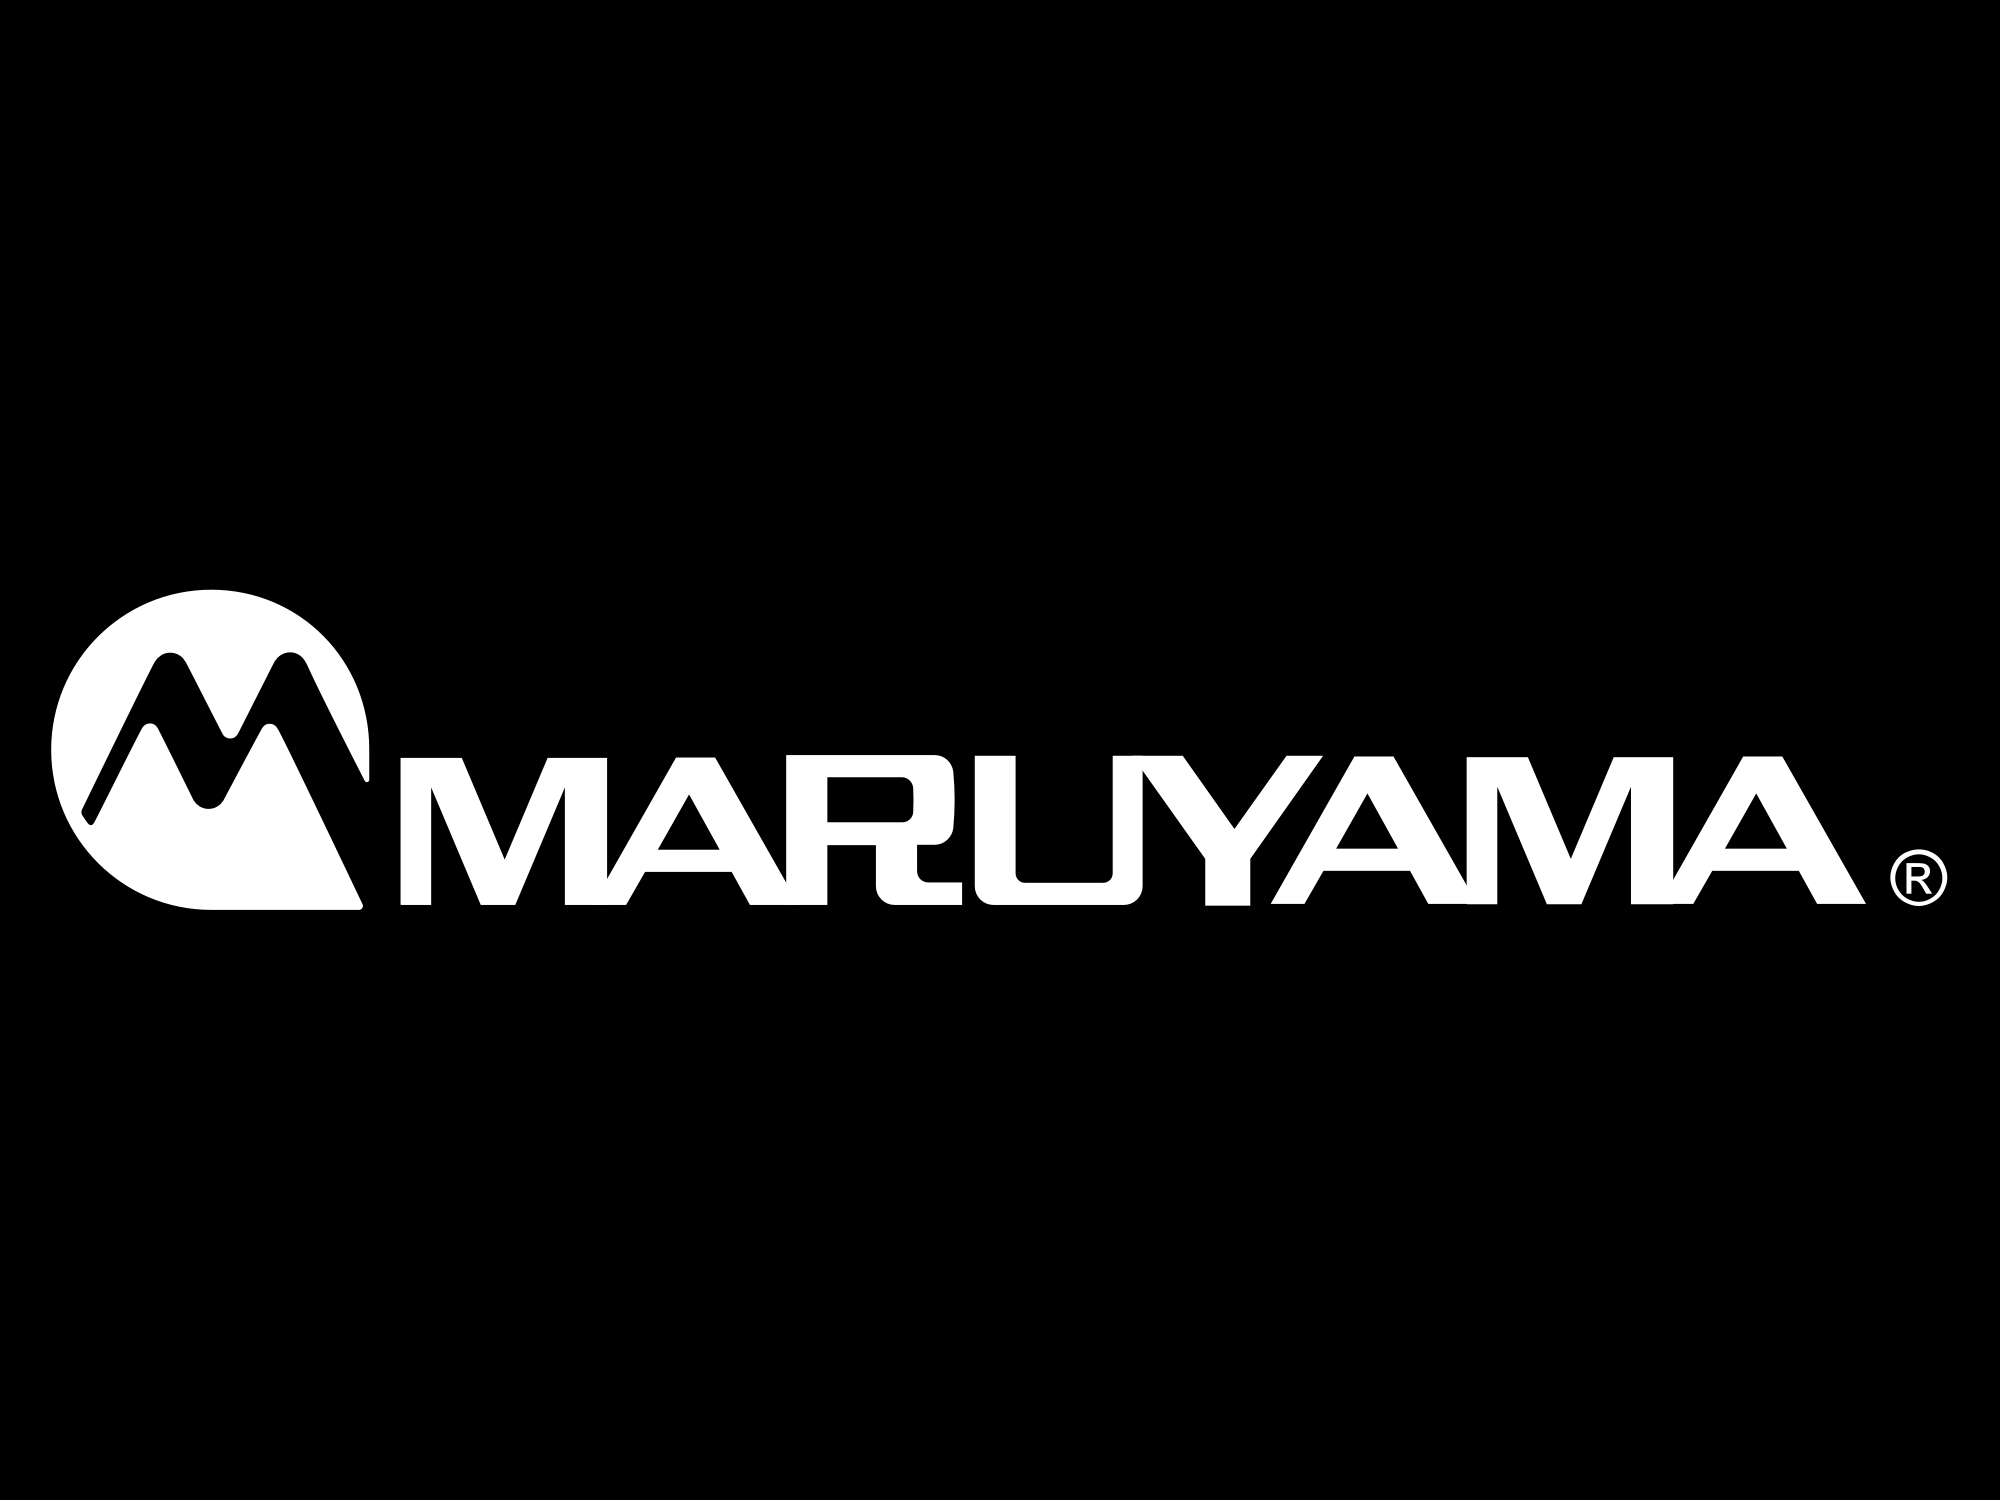 Maruyama - Maruyama US